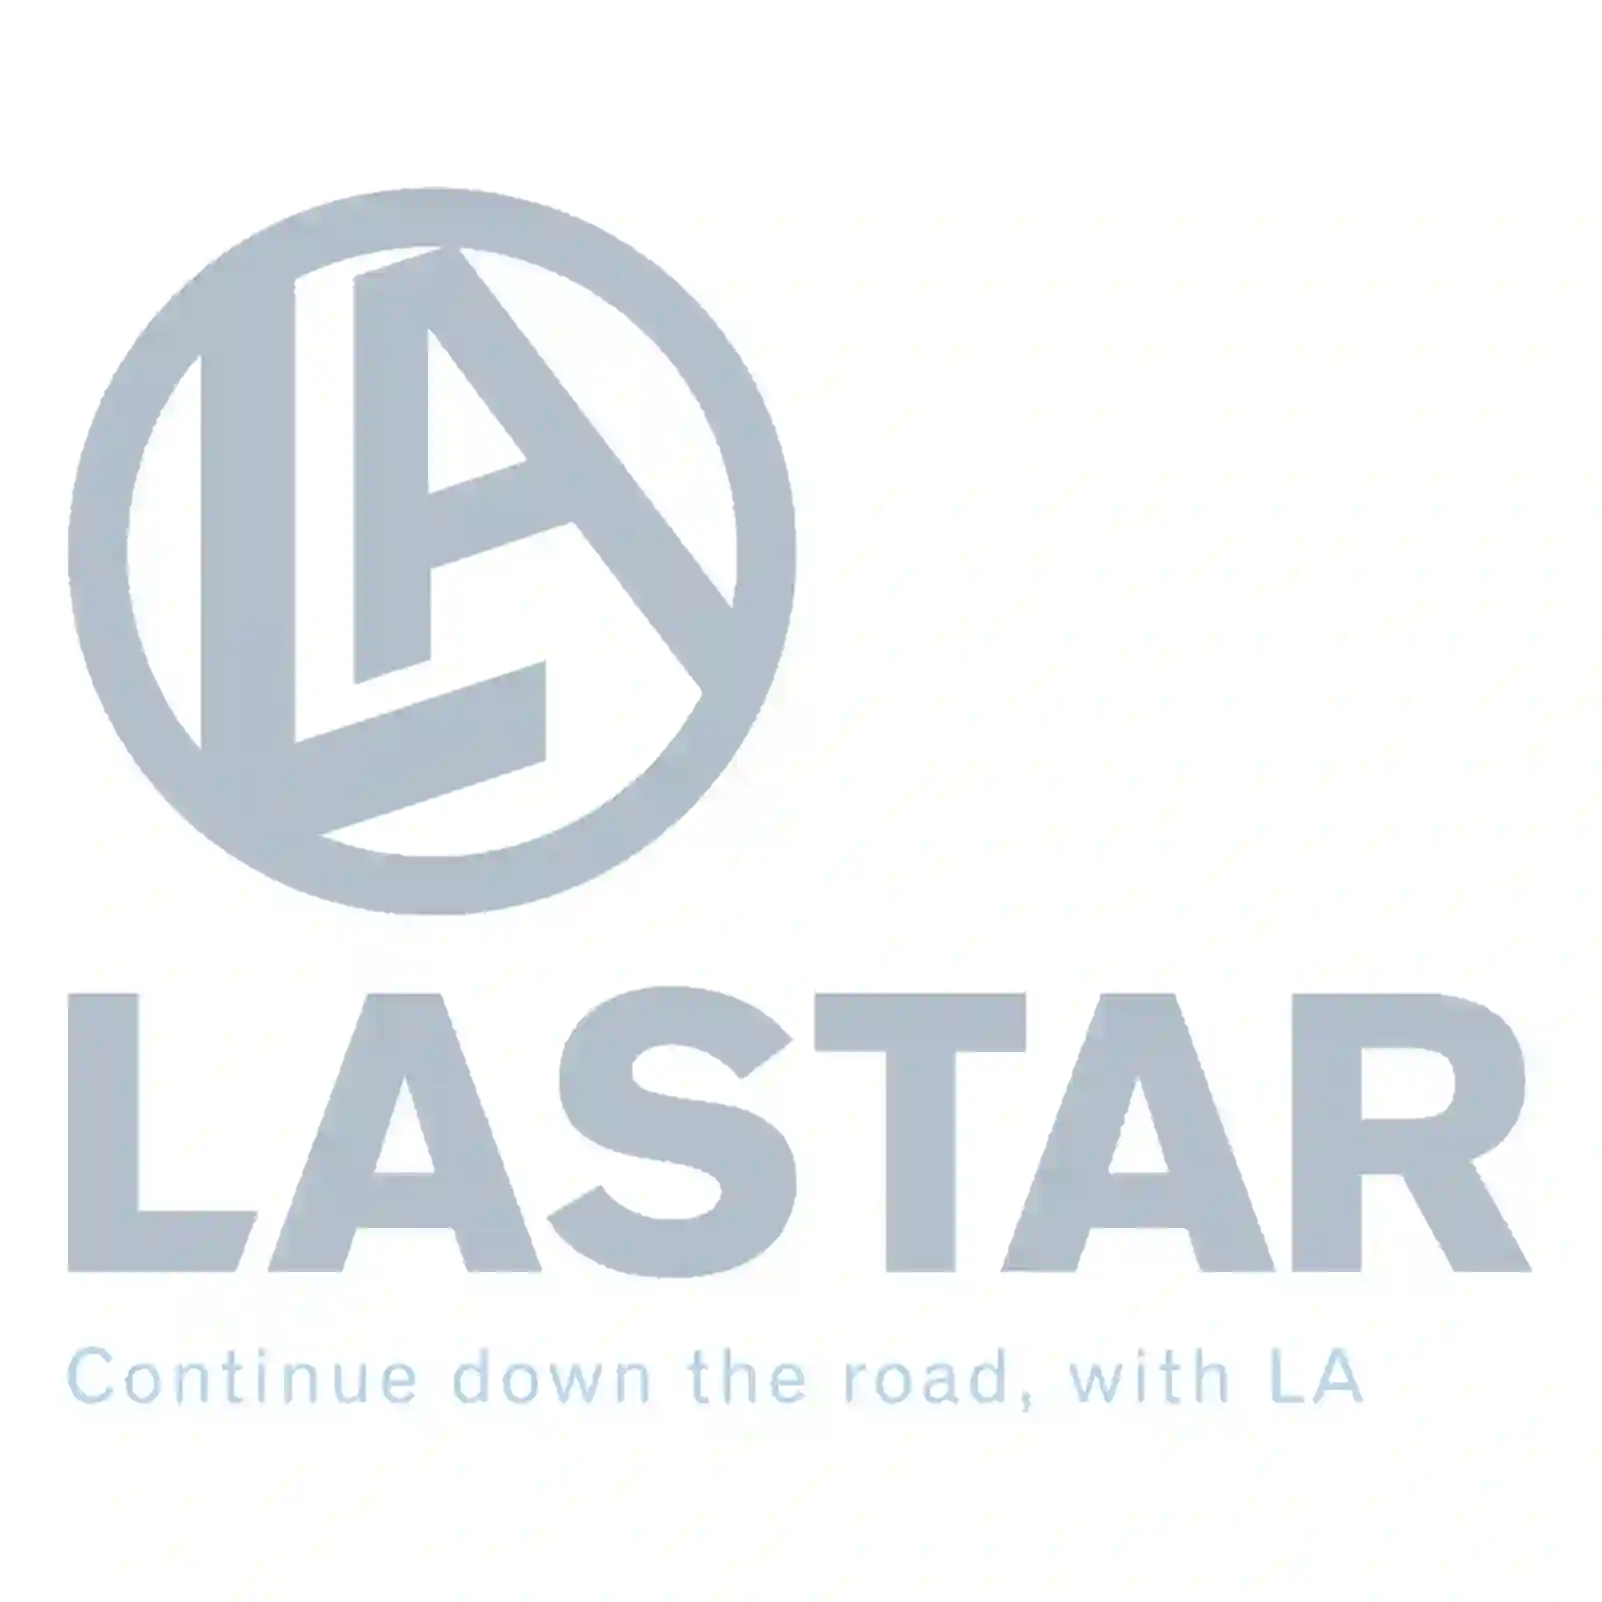 Release Lever Release fork, la no: 77722195 ,  oem no:#YOK Lastar Spare Part | Truck Spare Parts, Auotomotive Spare Parts